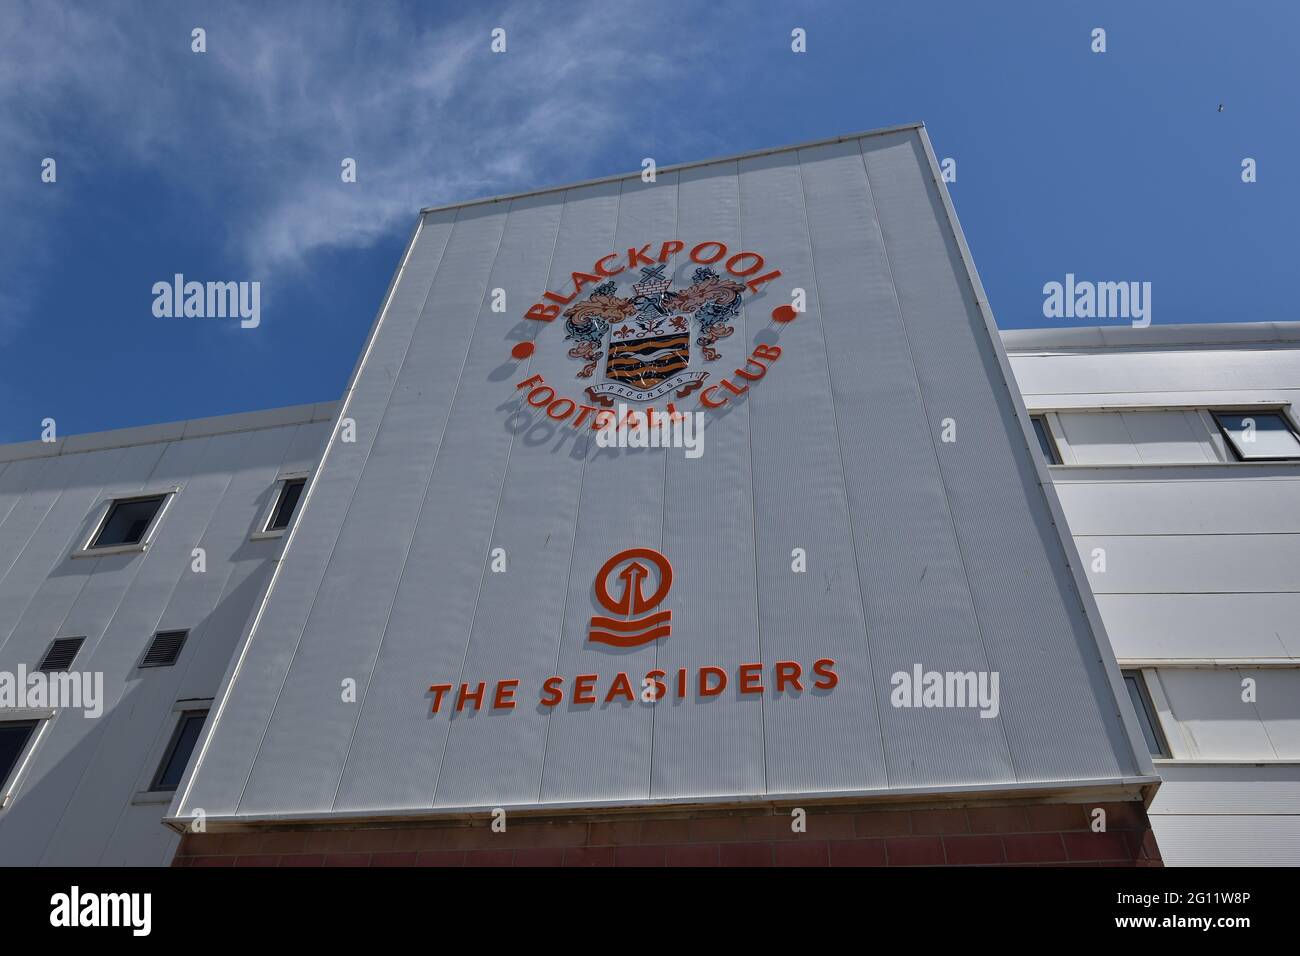 Blackpool football club emblem on side of stadium Stock Photo